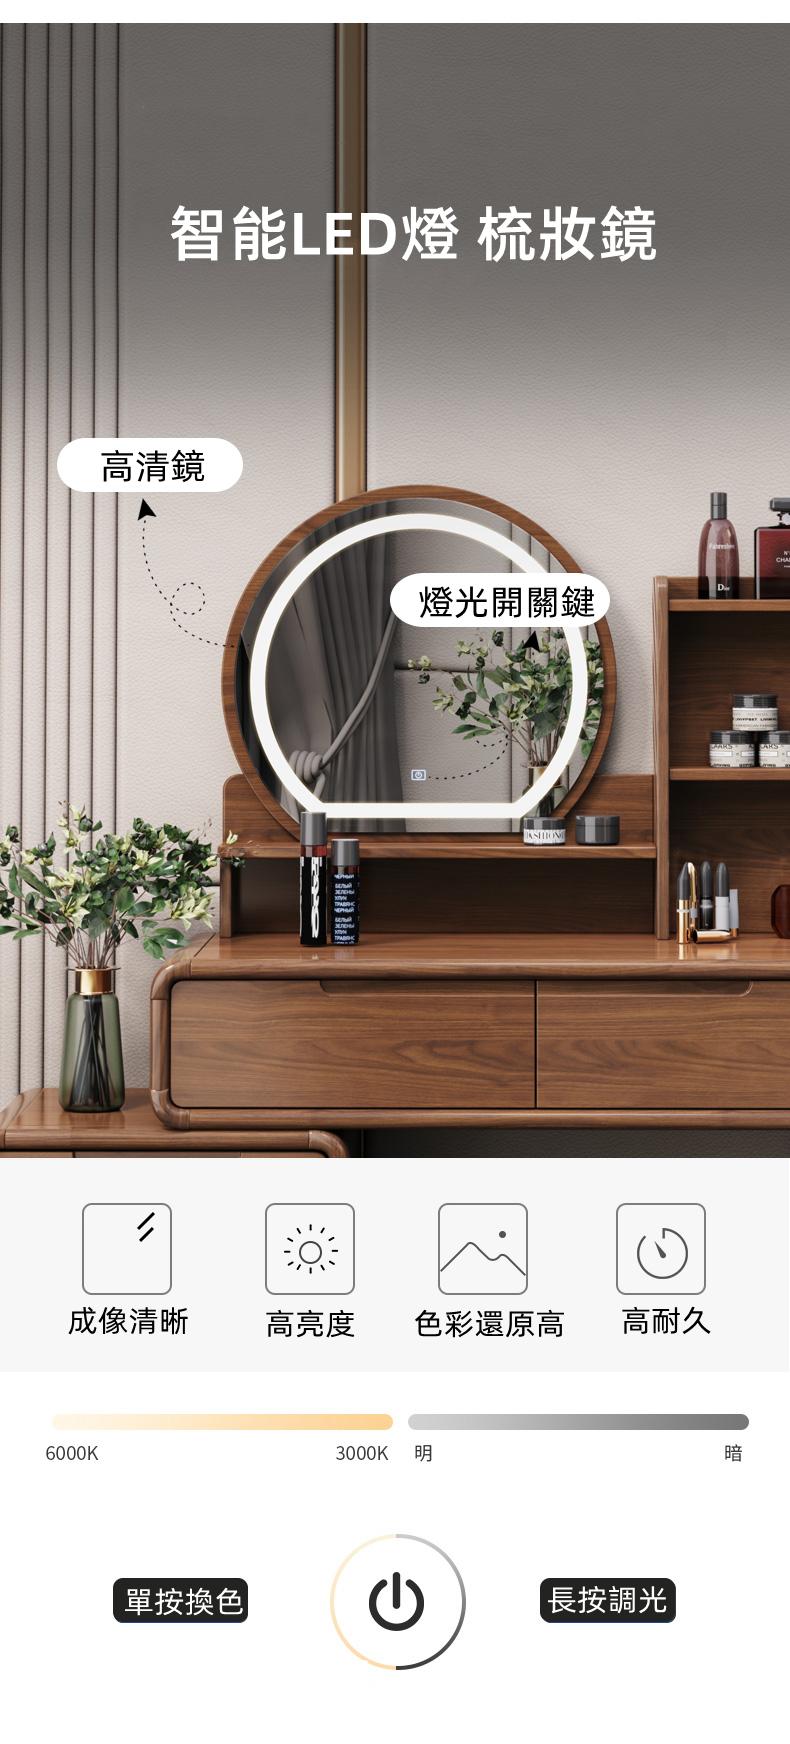 新中式 實木收納 伸縮梳妝台(圓鏡)連梳妝櫈 60cm(IS8108)